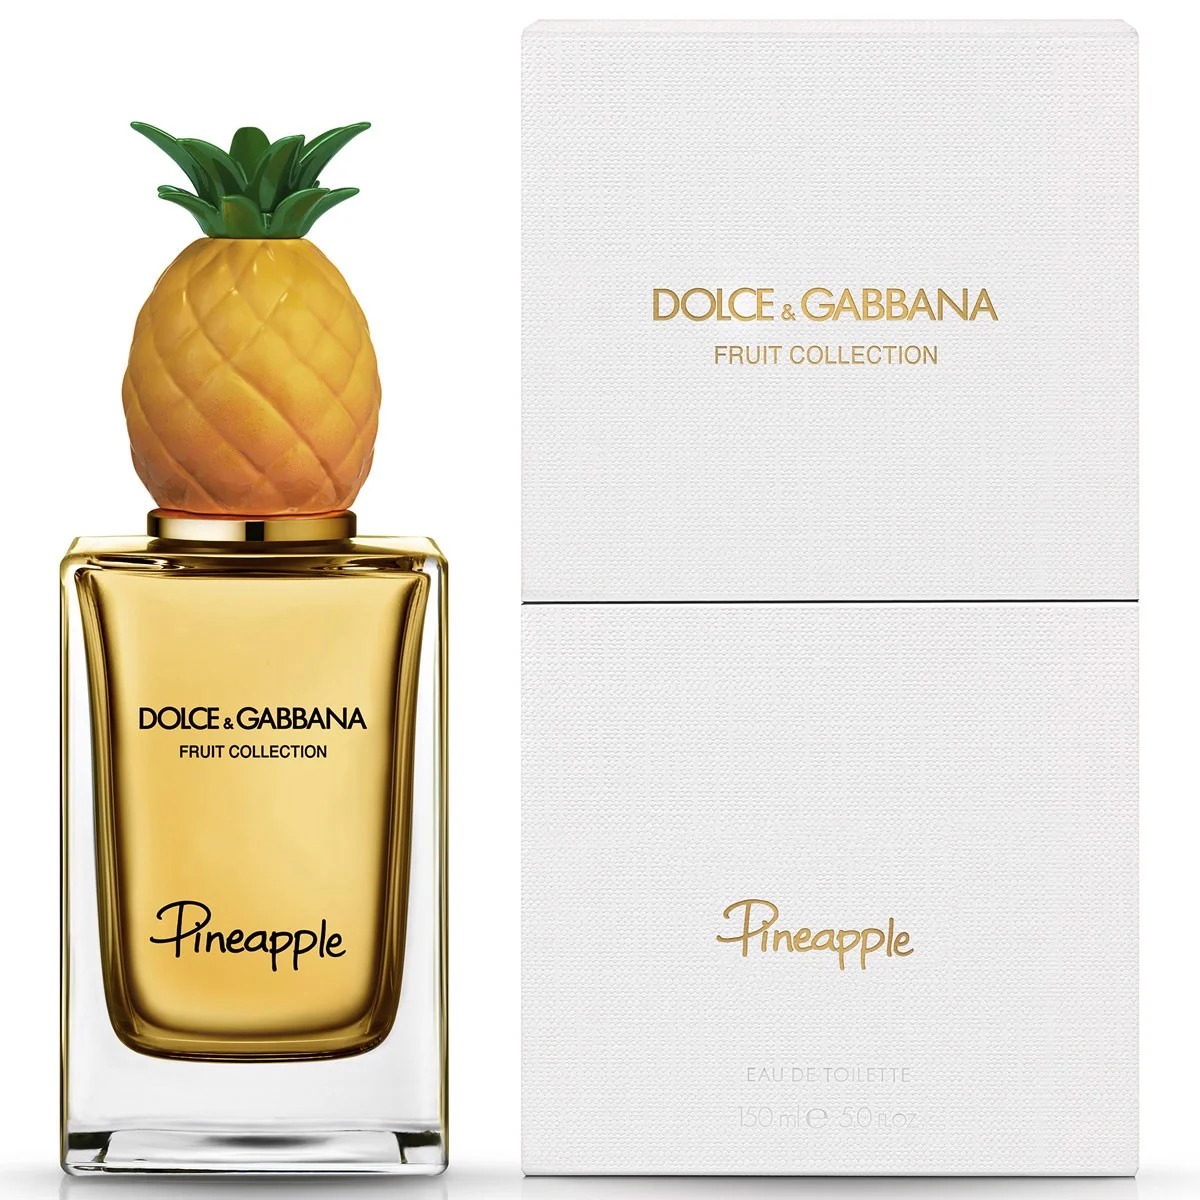 Dolce & Gabbana Pineapple 1